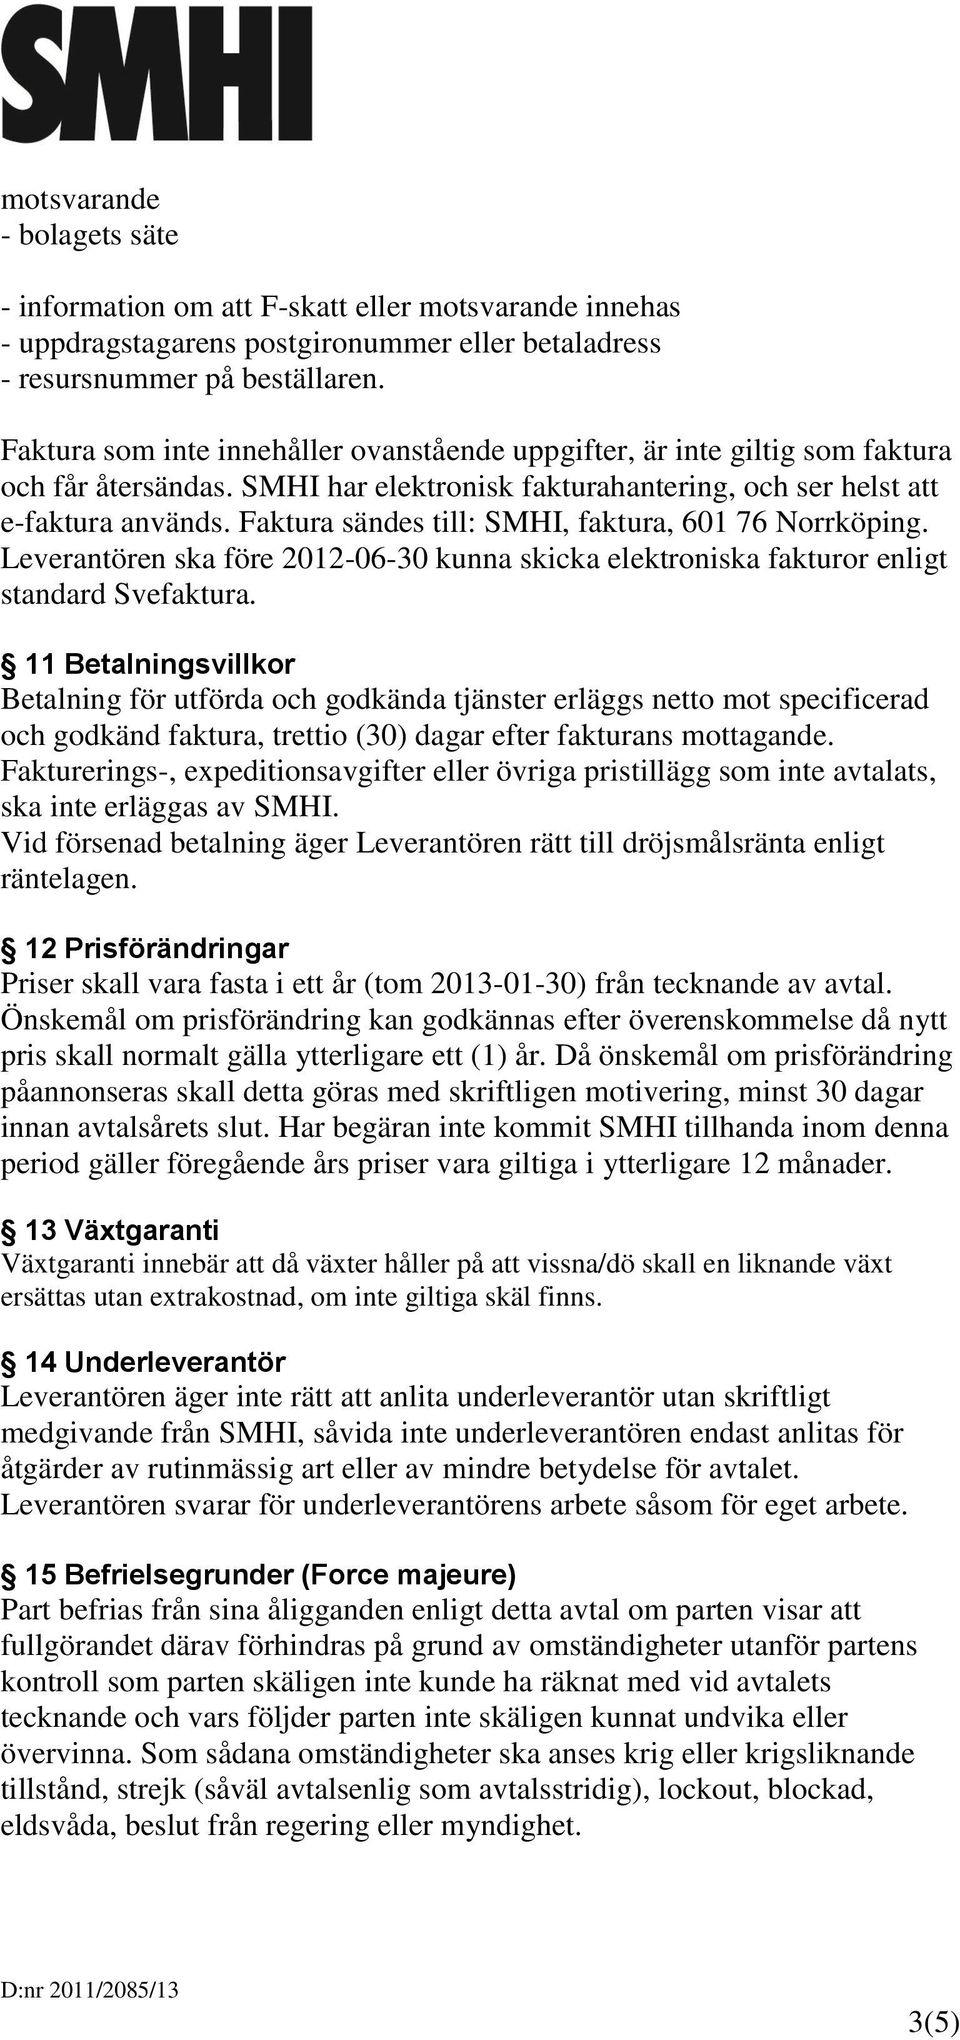 Faktura sändes till: SMHI, faktura, 601 76 Norrköping. Leverantören ska före 2012-06-30 kunna skicka elektroniska fakturor enligt standard Svefaktura.